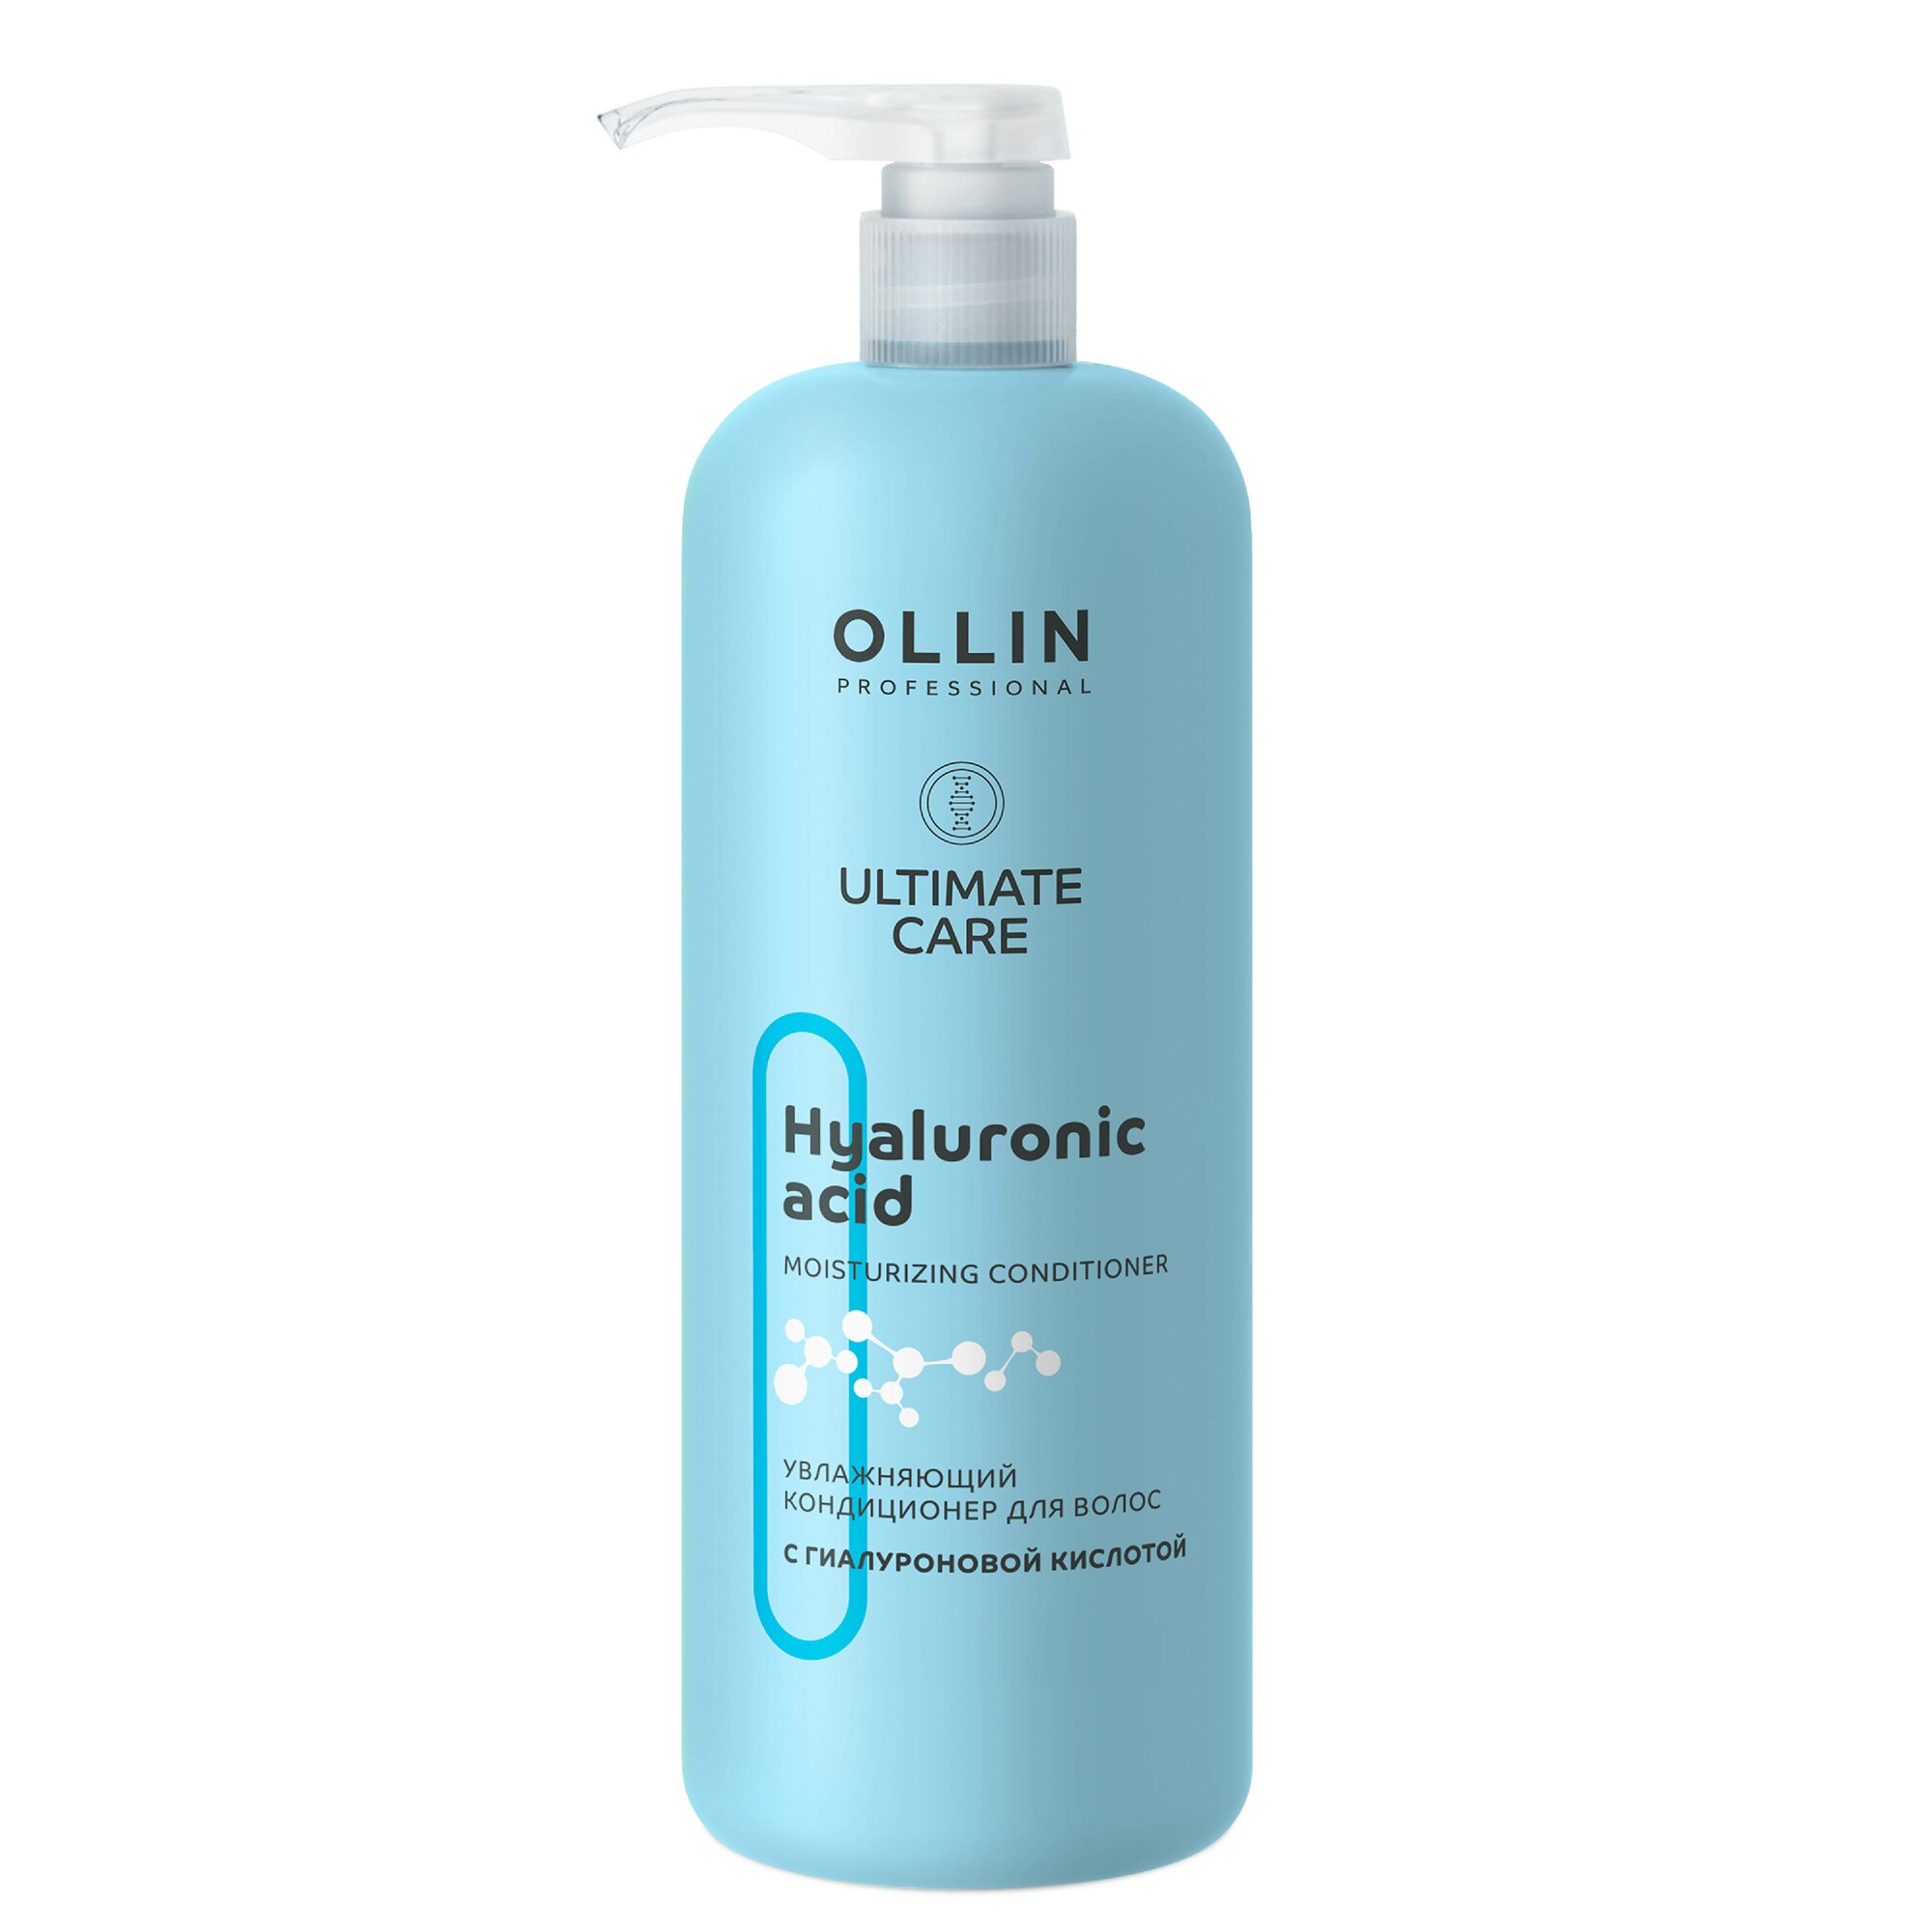 Кондиционер ULTIMATE CARE для увлажнения волос OLLIN PROFESSIONAL с гиалуроновой кислотой 1000 мл